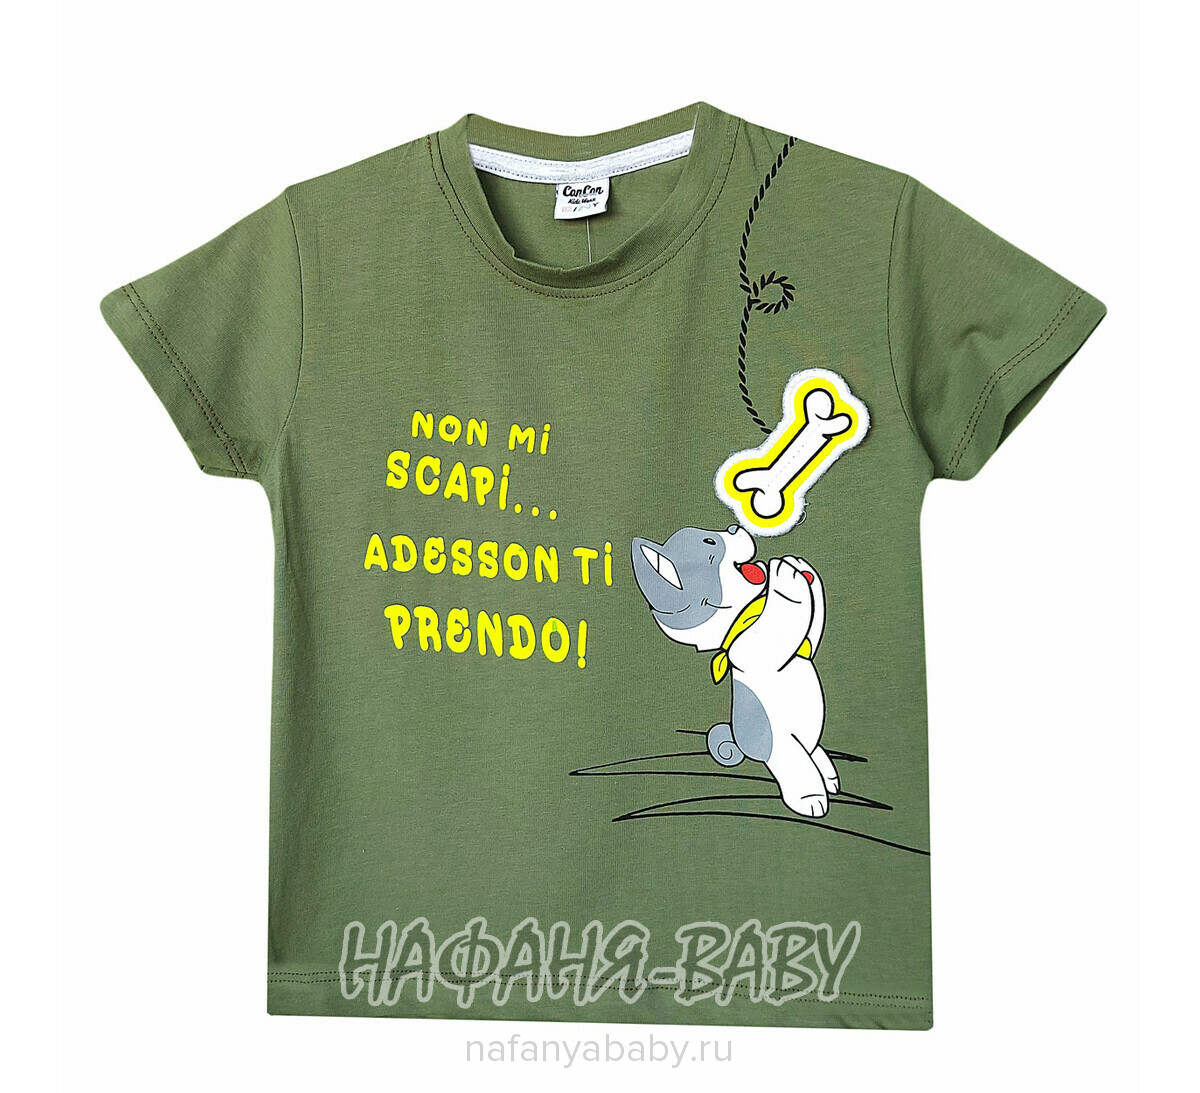 Детская футболка Con Con арт: 3004, 1-4 года, 5-9 лет, цвет хаки зеленый, оптом Турция